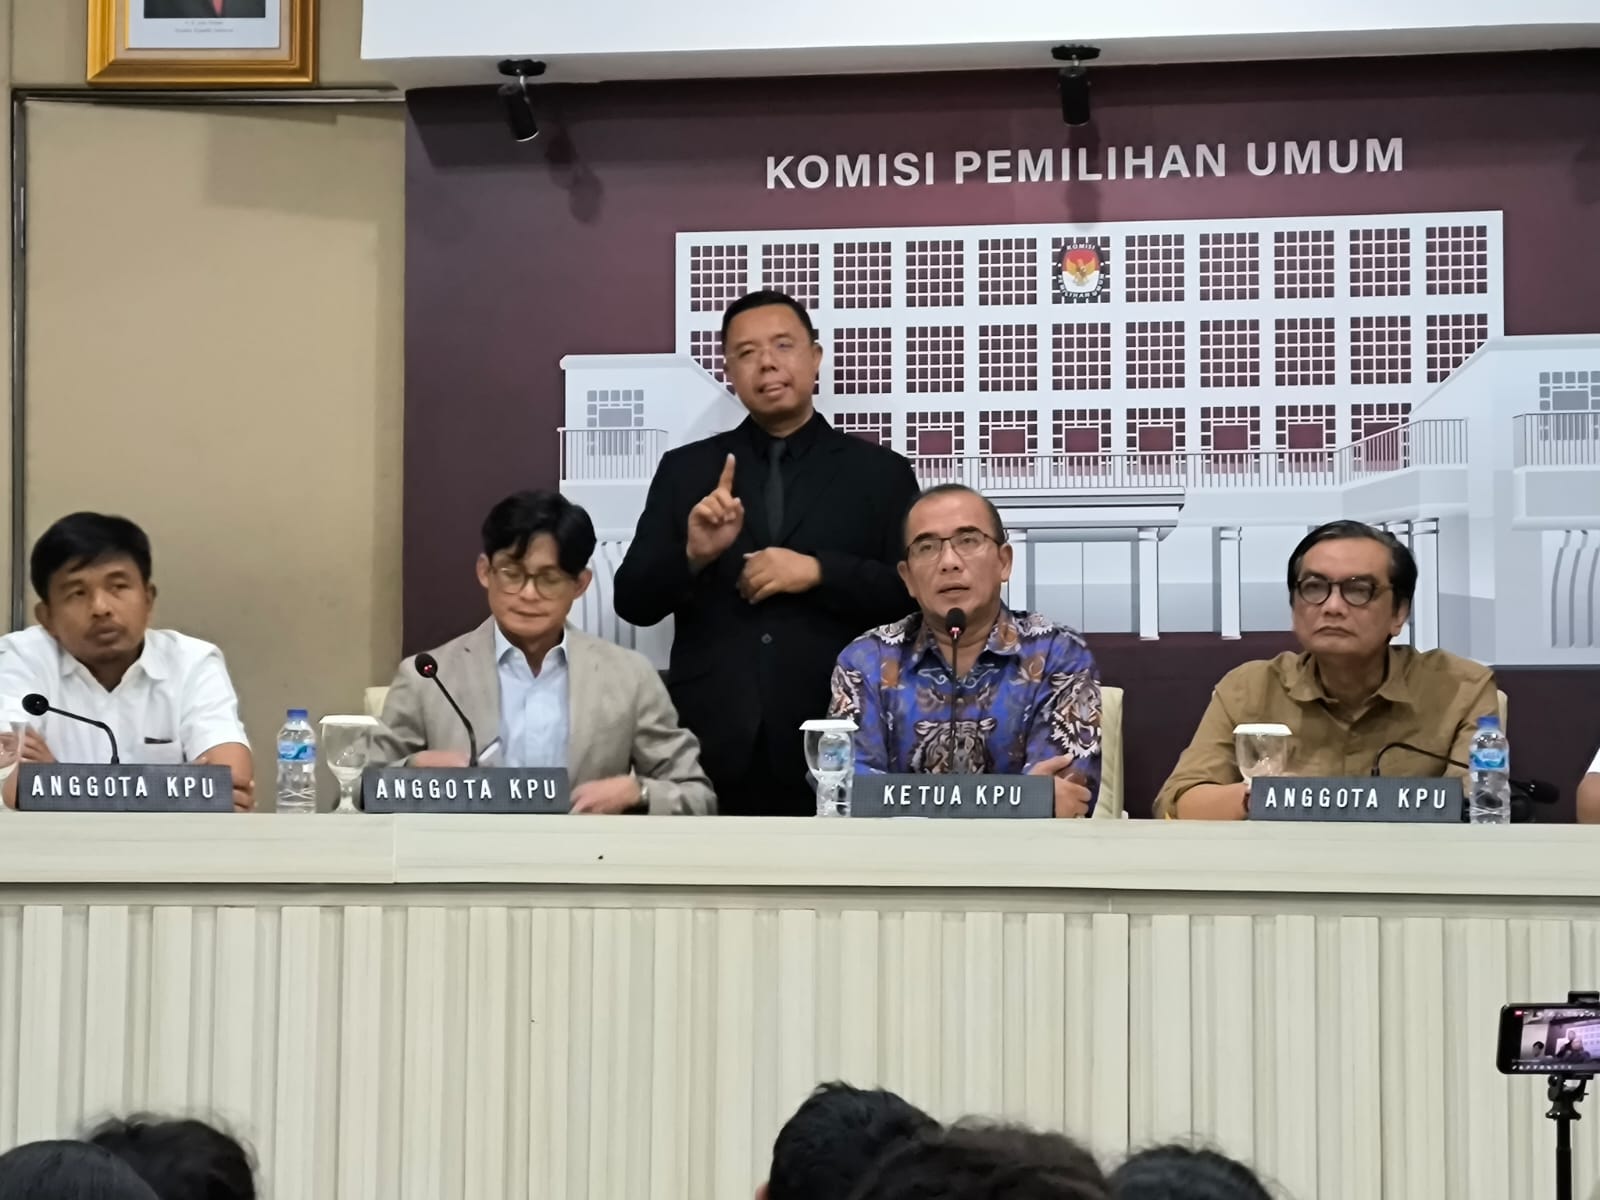 KPU: Durasi Interaksi Antara Calon Saat Debat Akan Lebih Banyak Dari Pemilu 2019